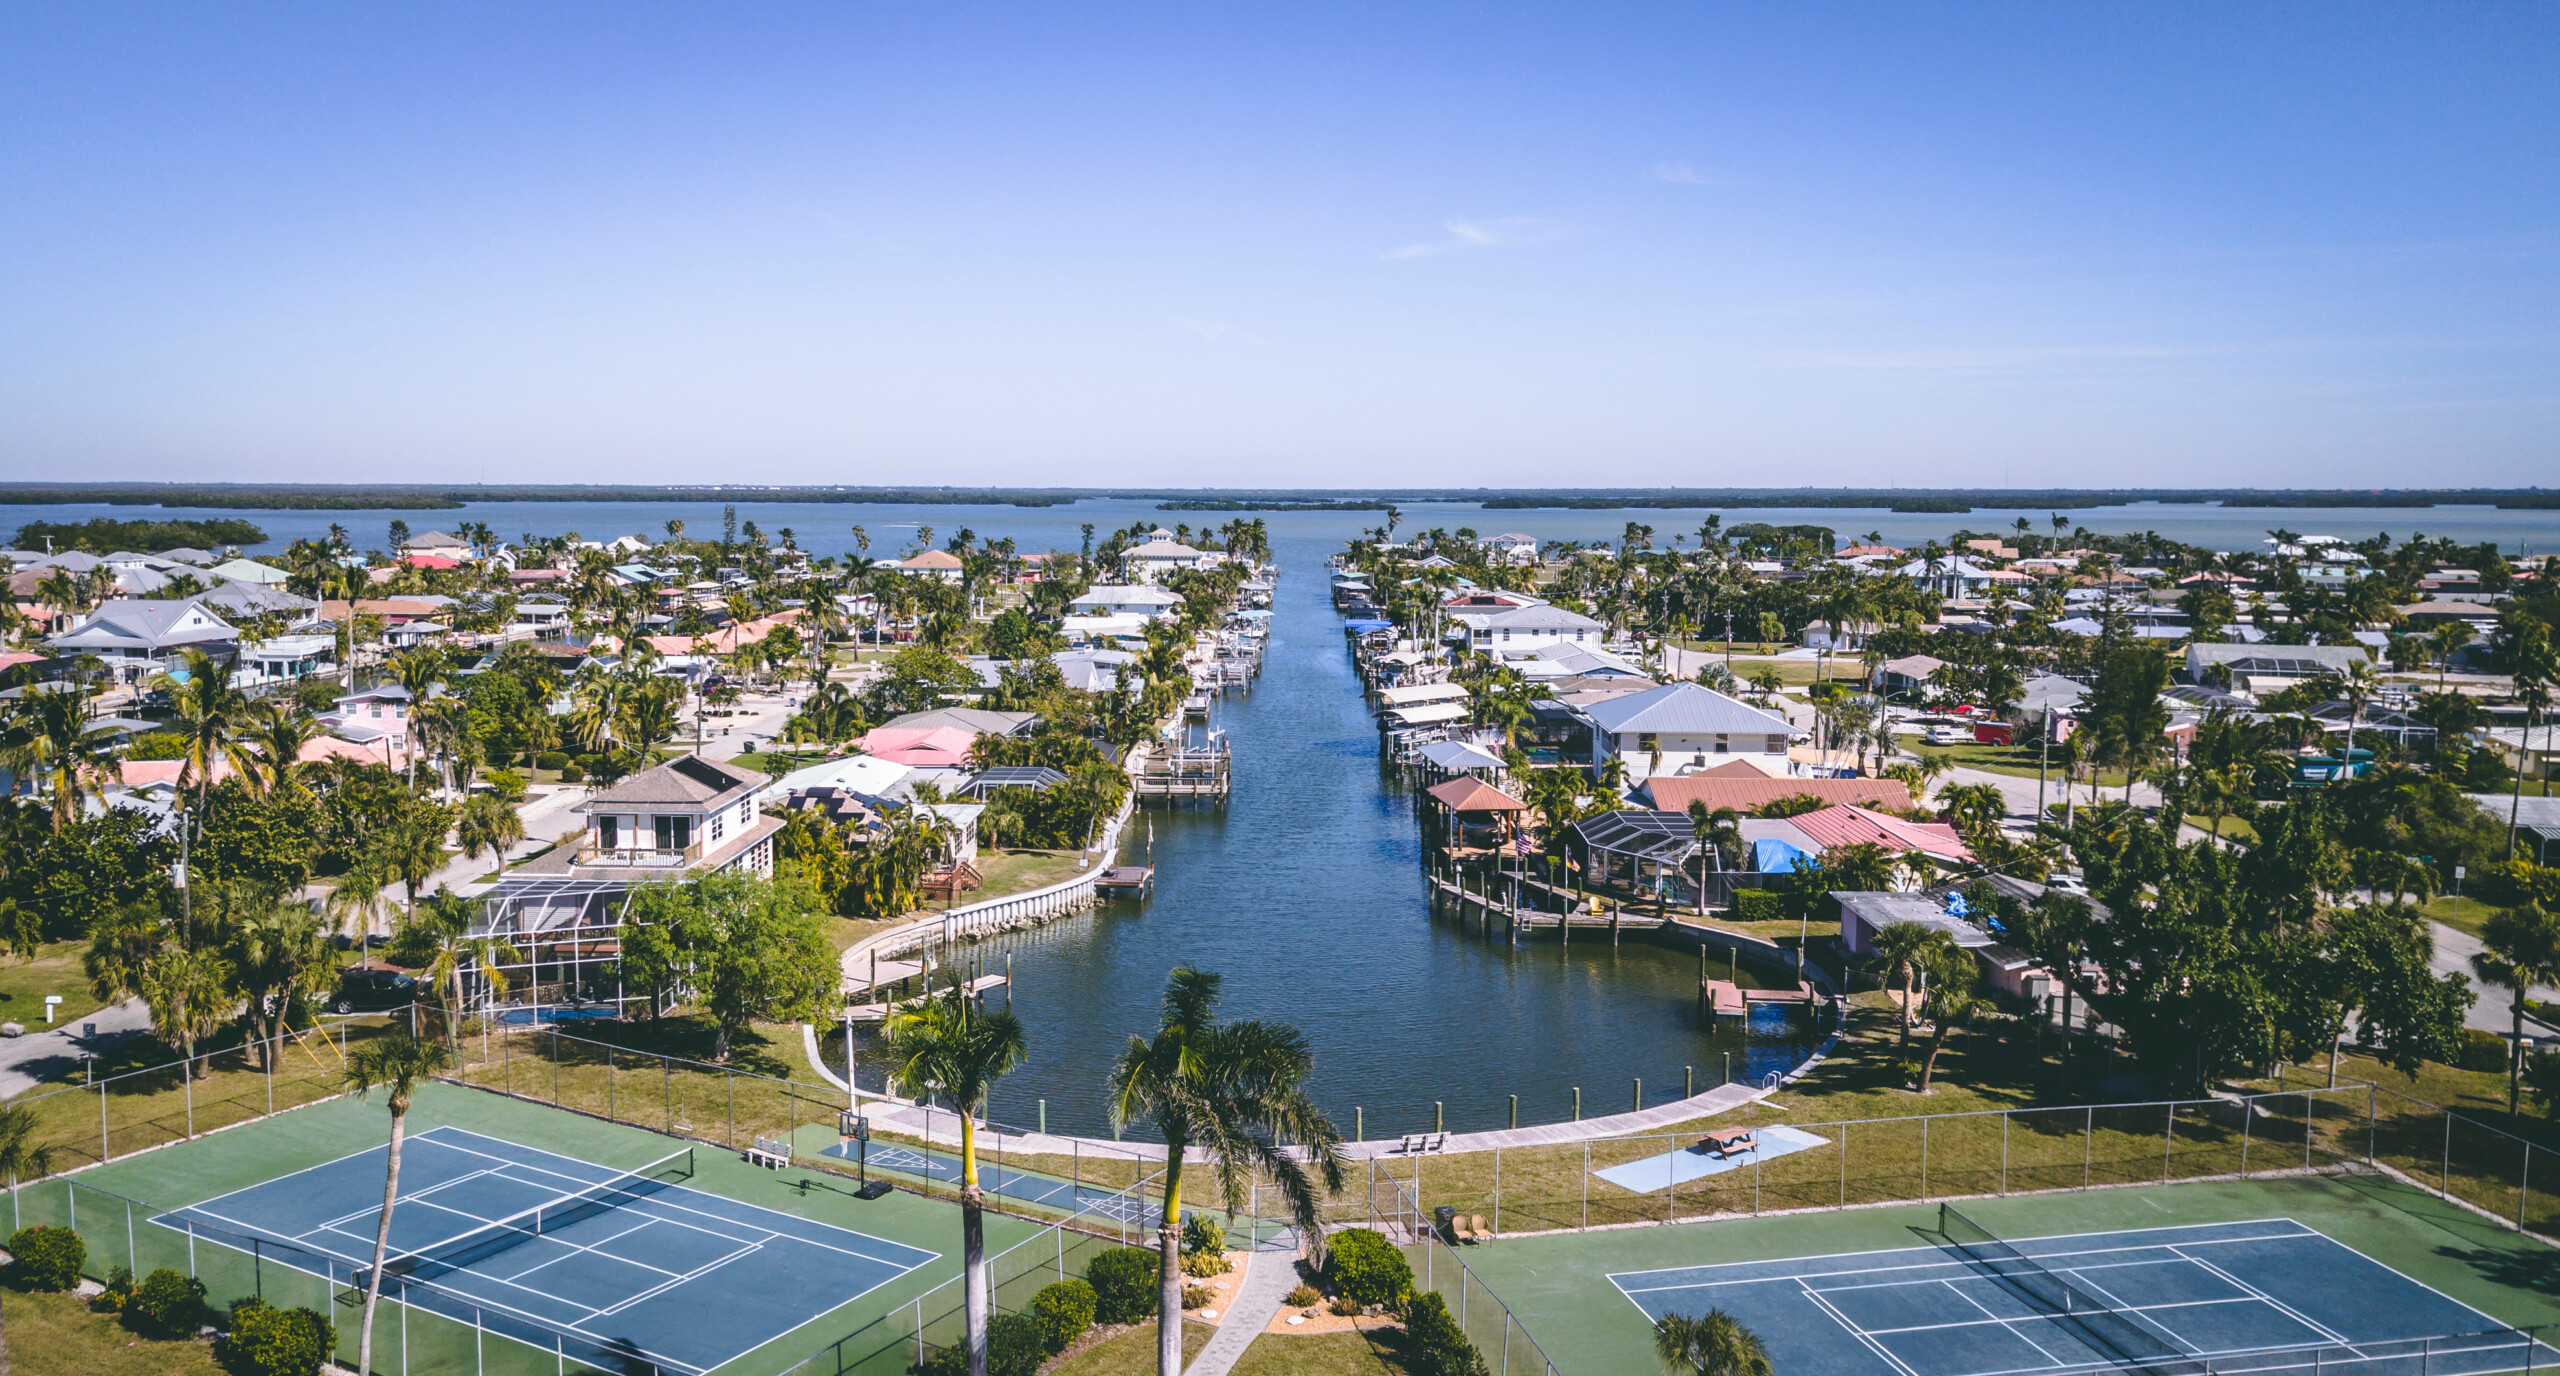 Fort Myers River apartamenty widok z drona, licencja: shutterstock/By Alex Westermann